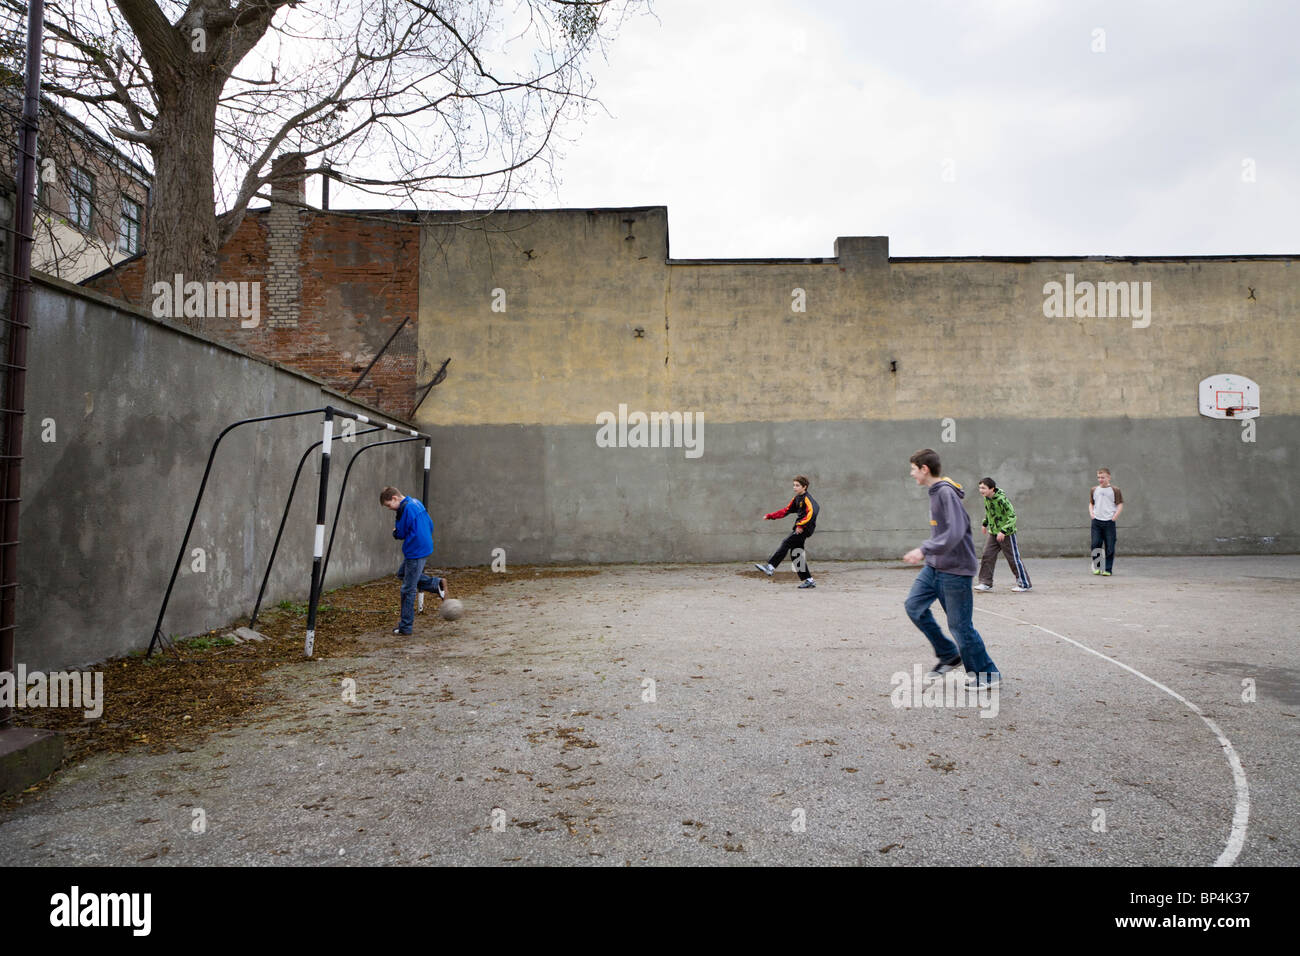 Los colegiales jugando al fútbol. Zwolen Polonia. Foto de stock